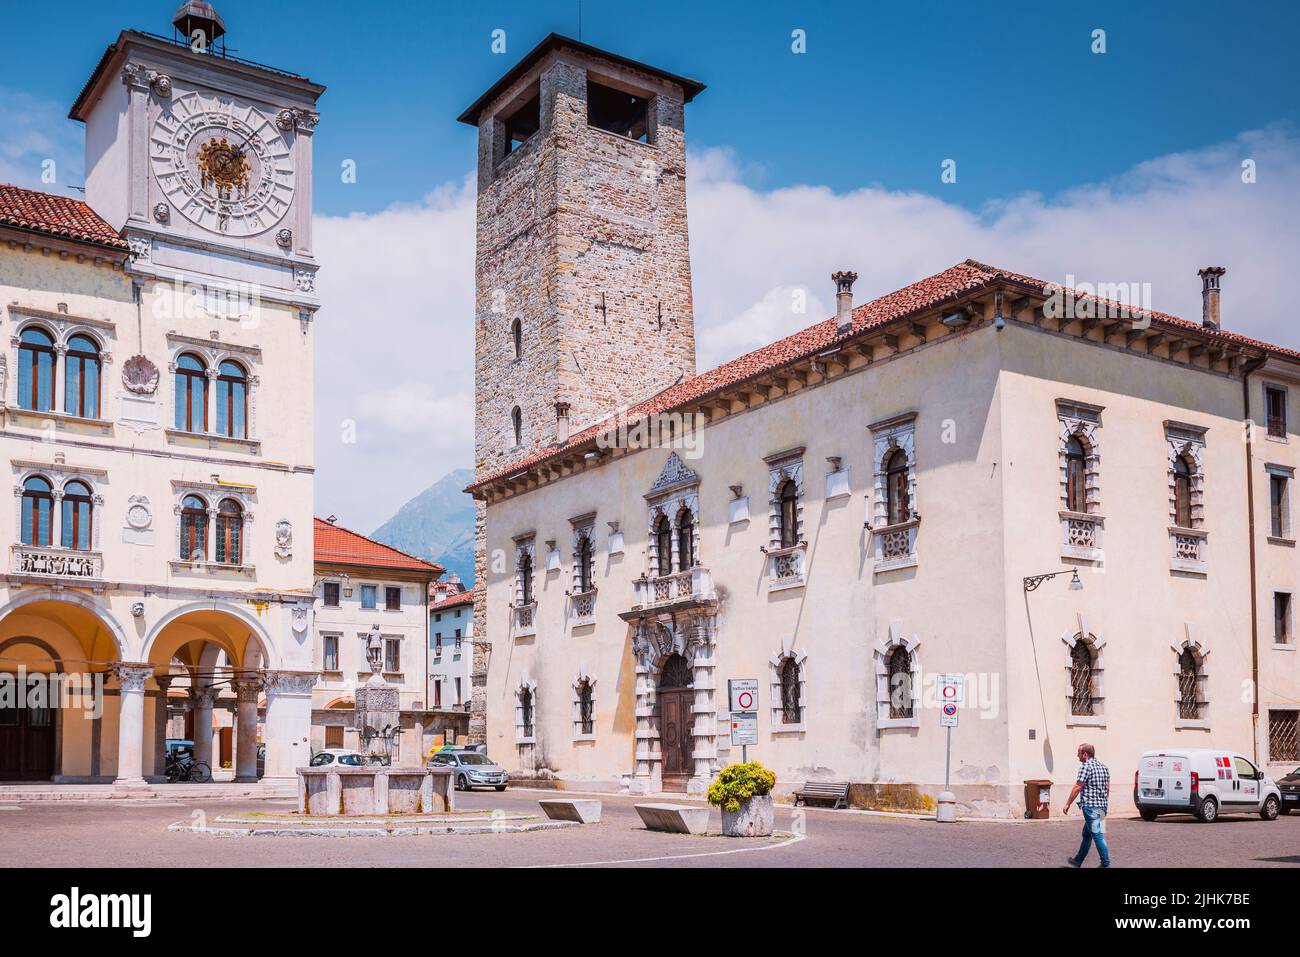 Piazza del Duomo - Cathedral Square highlighting the The Palazzo dei Rettori (L) and Vescovi Palace (R). Belluno, Veneto, Italy, Europe Stock Photo